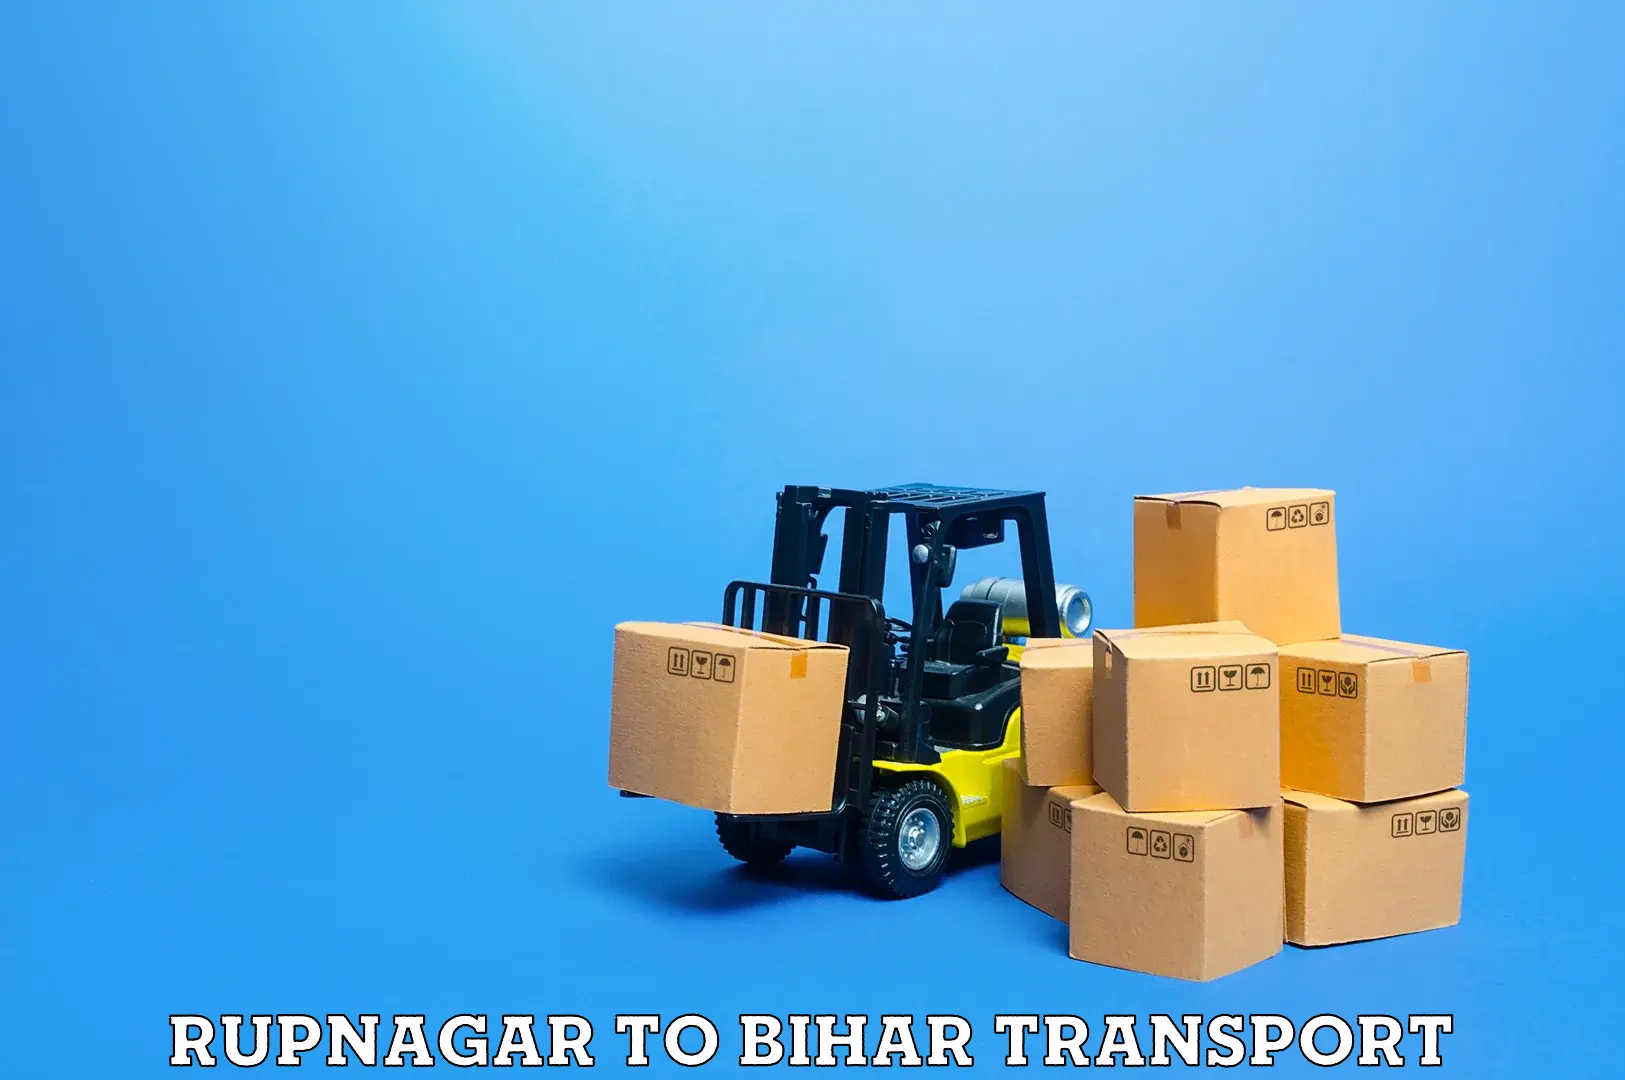 Express transport services Rupnagar to Gaya